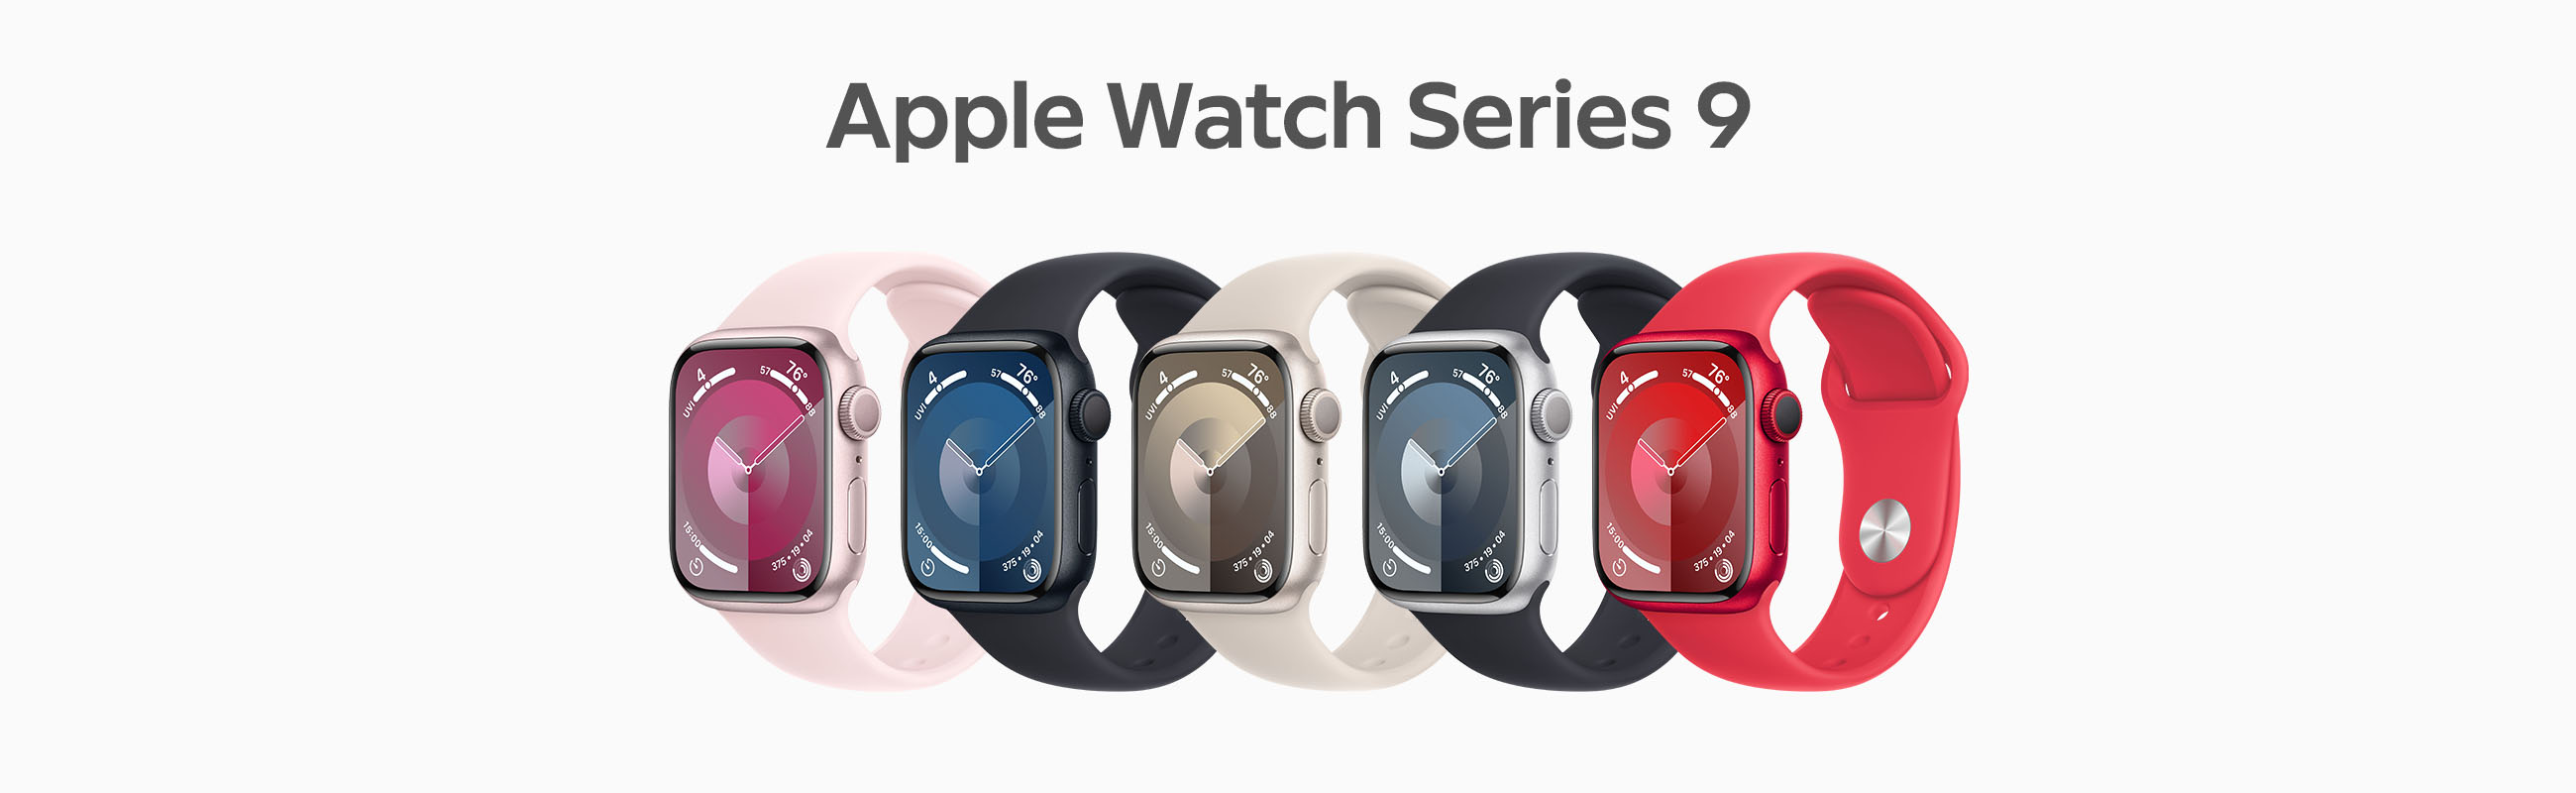 Apple_Watch_Series_9.jpg